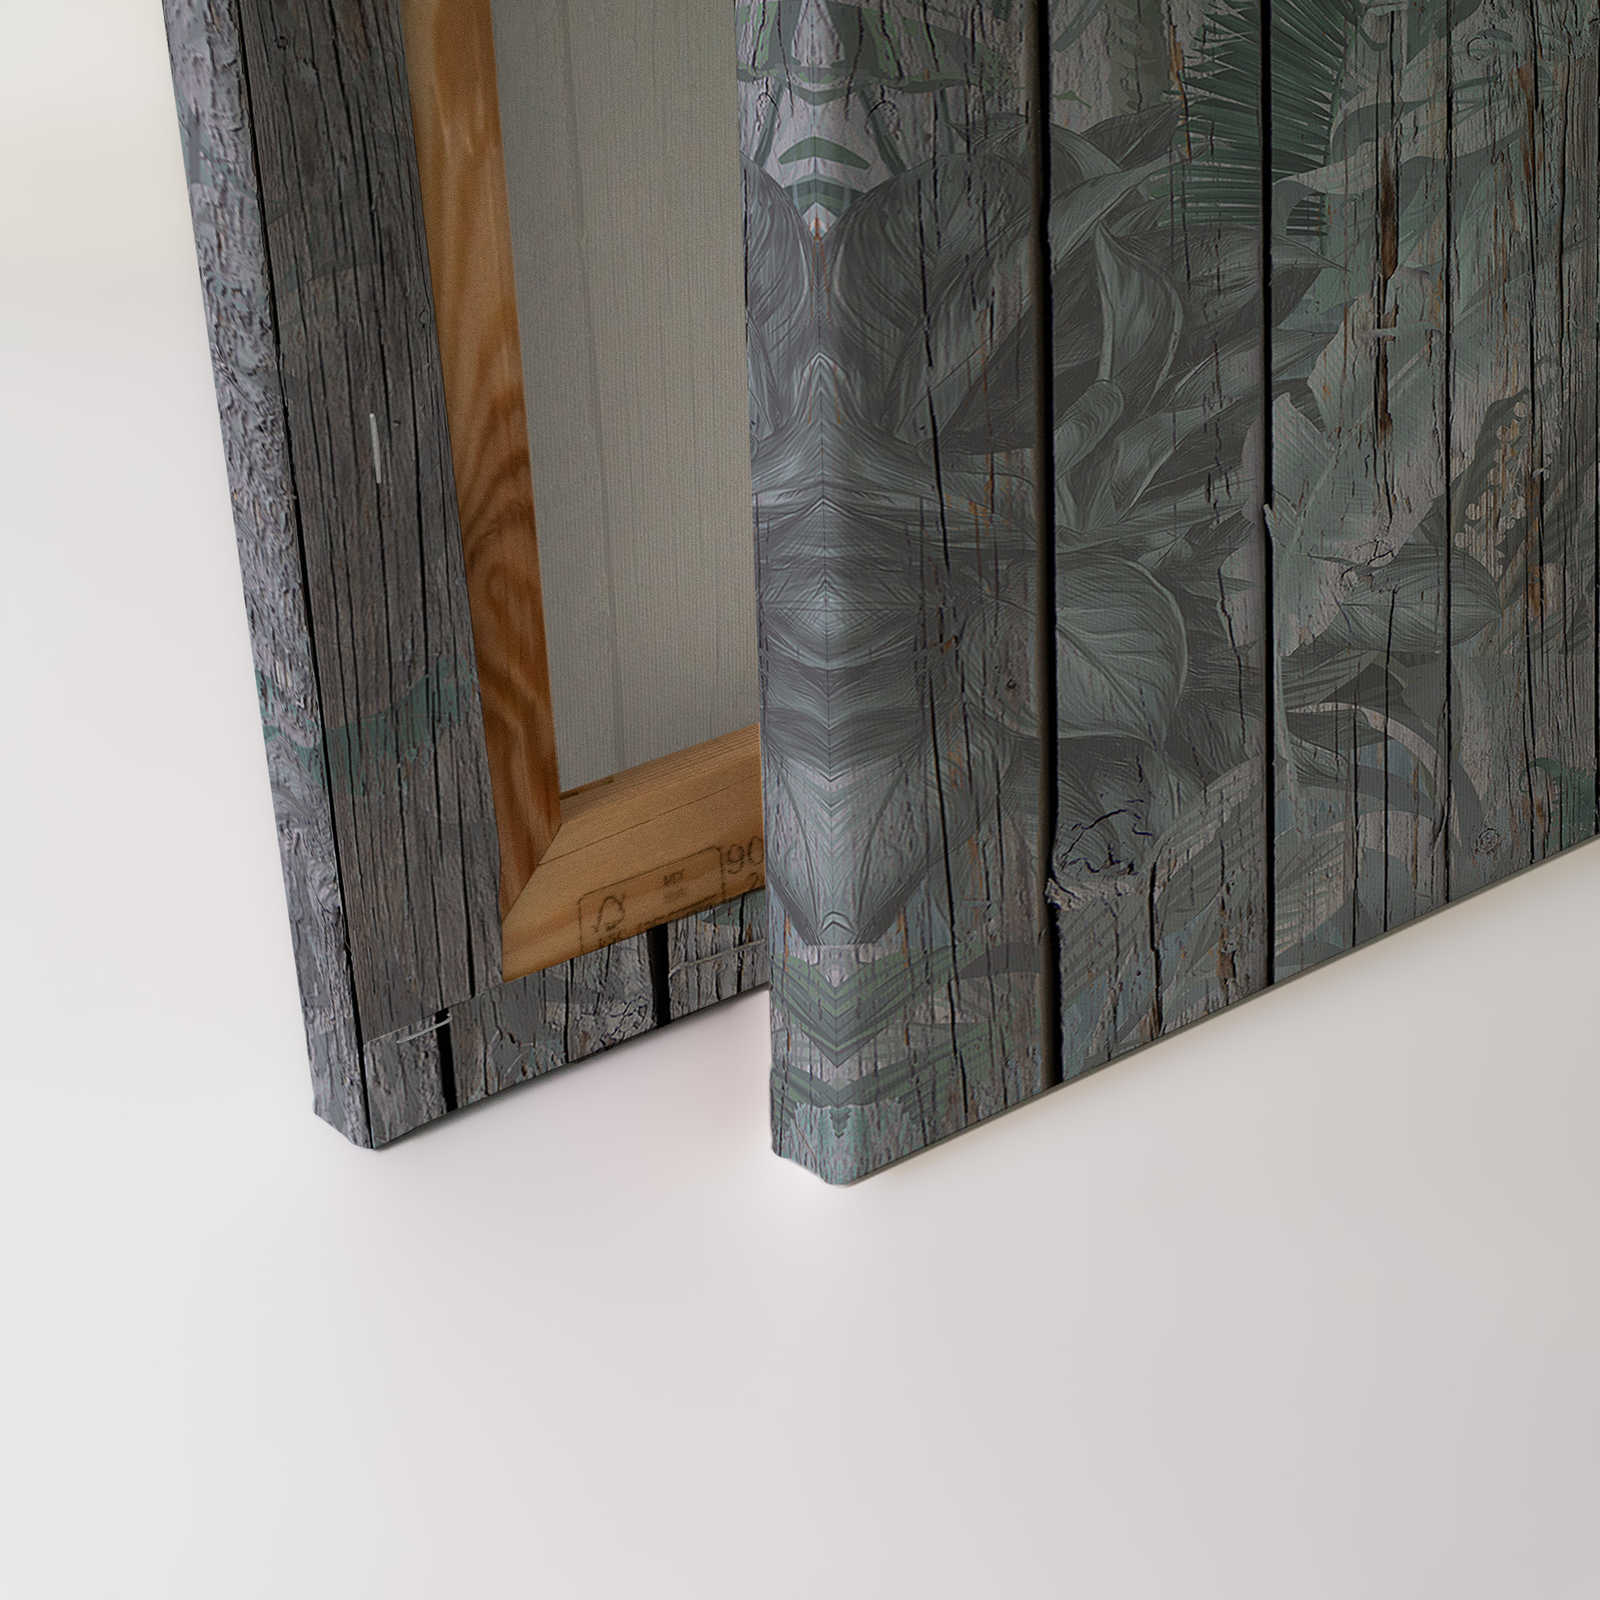             Tableau toile bois avec plantes de la jungle - 0,90 m x 0,60 m
        